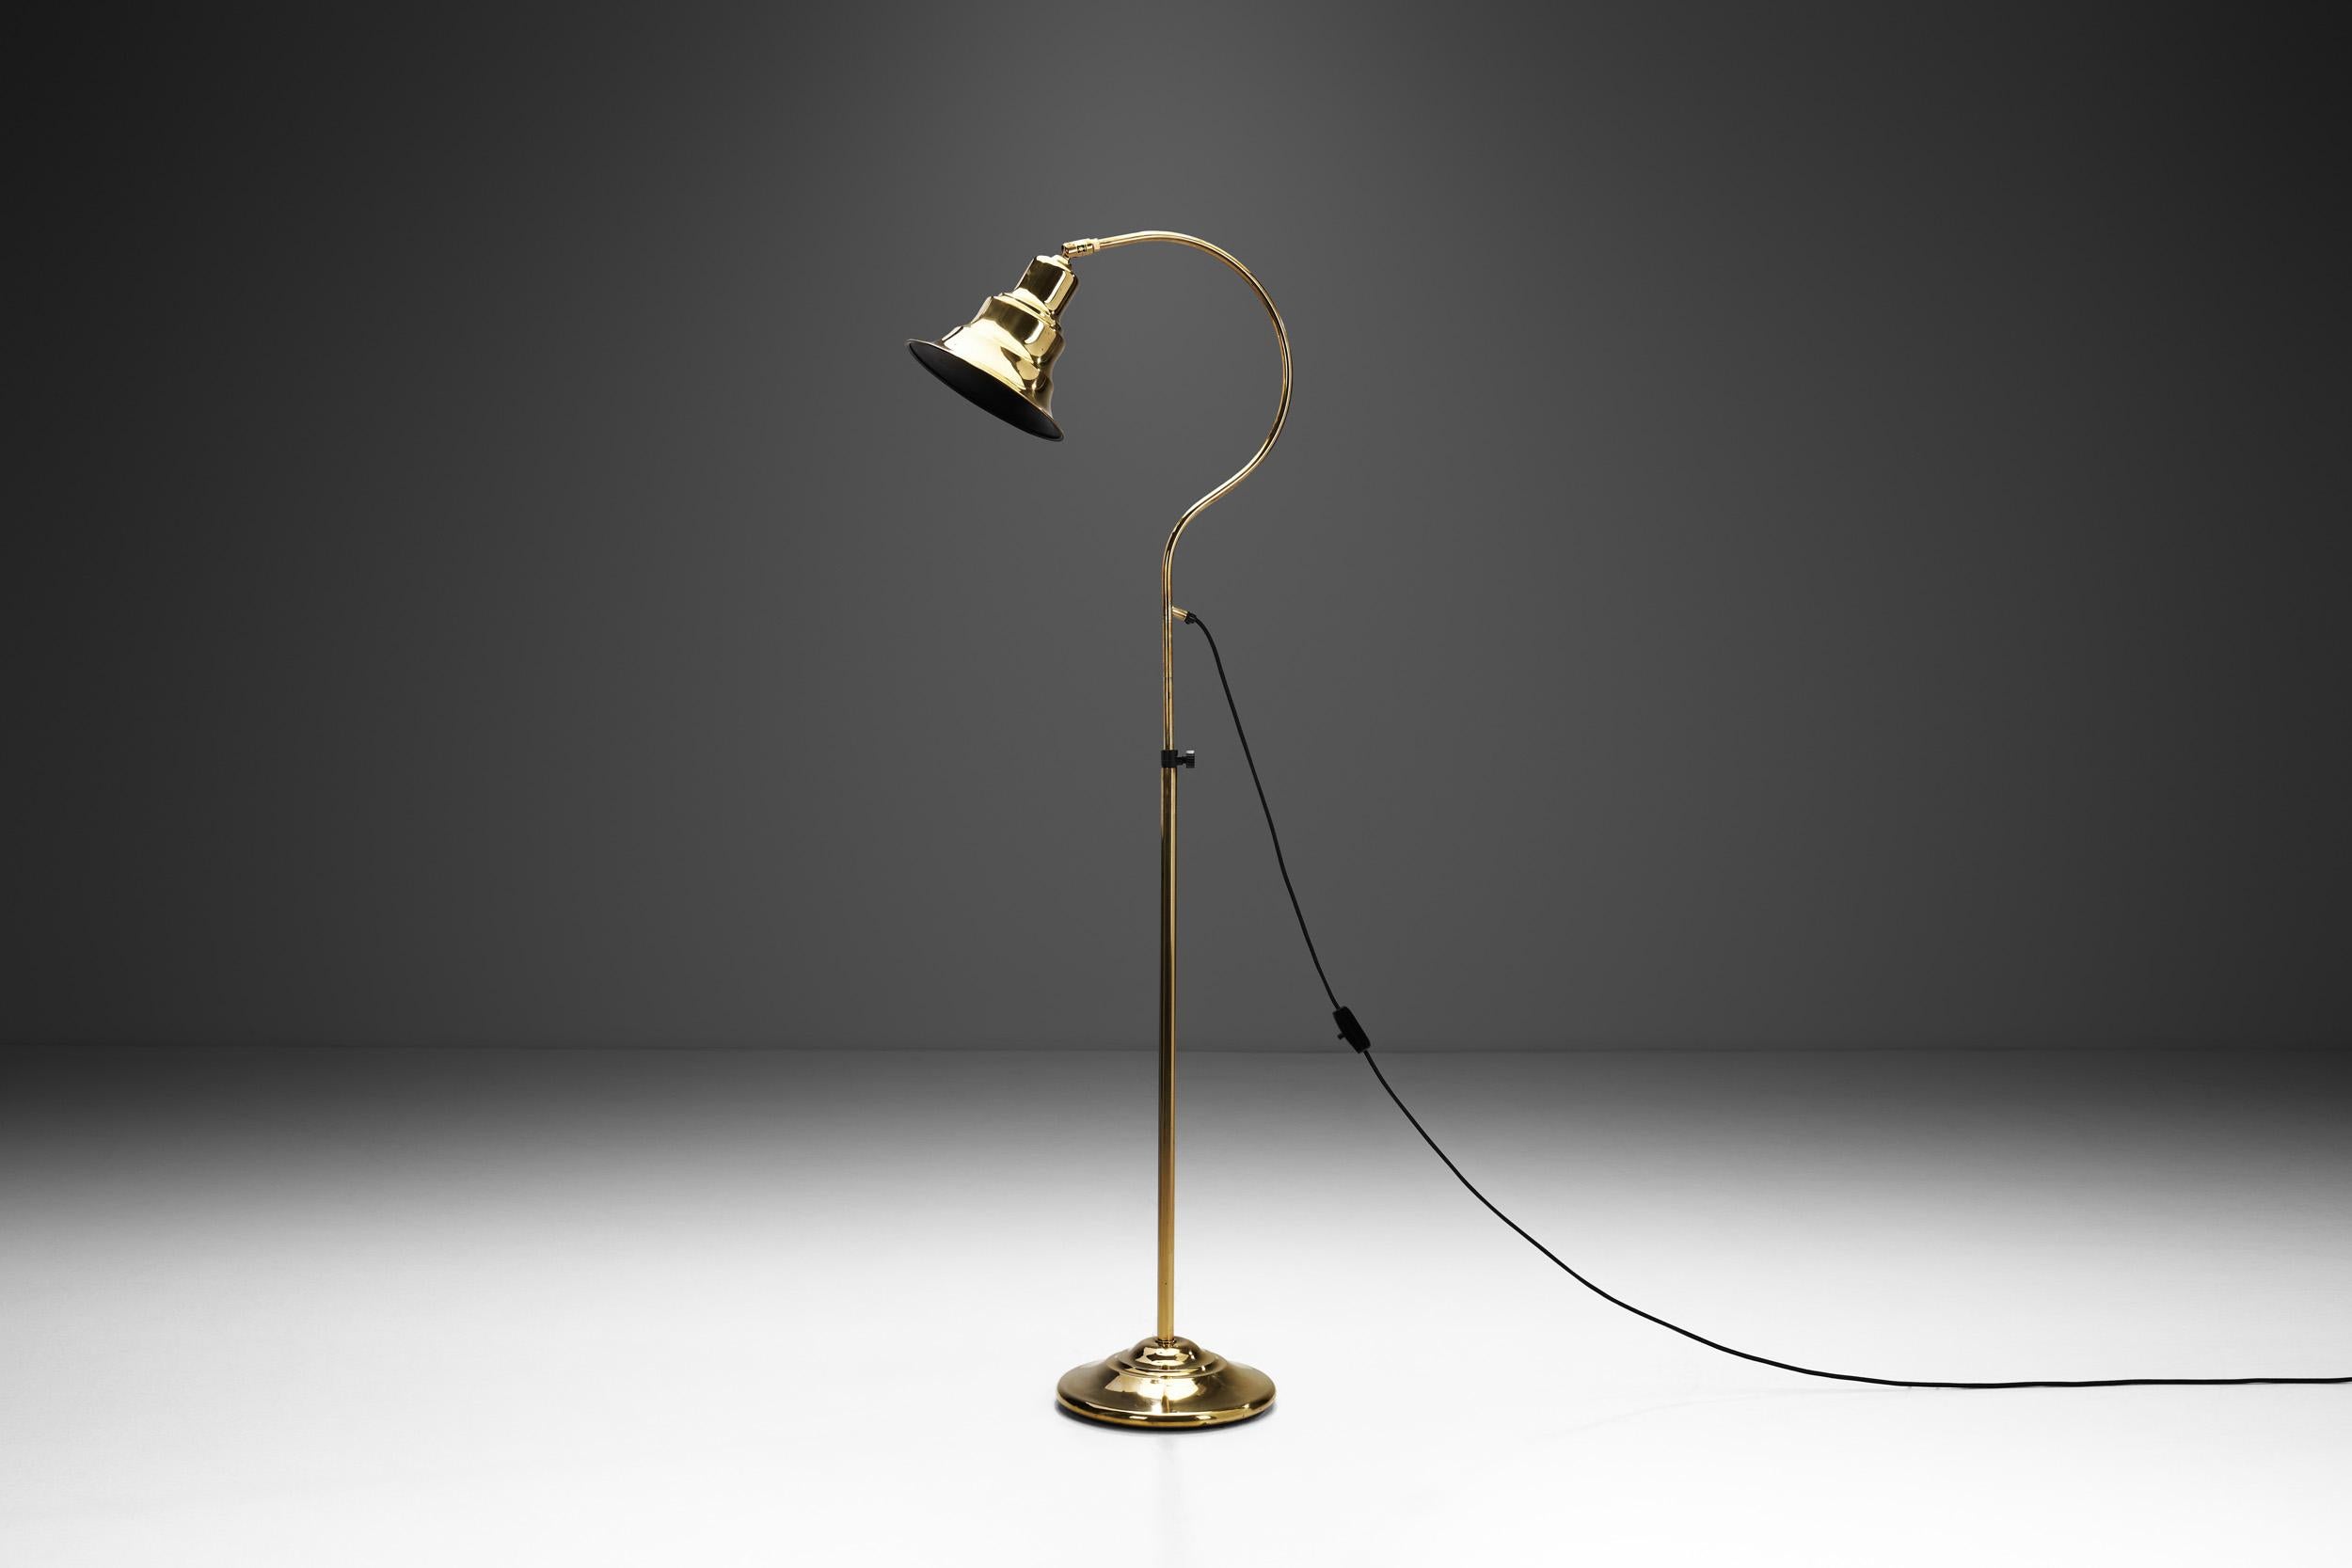 Aneta Lighting AB a été créée en 1947 et, au fil des ans, l'entreprise a collaboré avec des designers suédois de renom pour créer des modèles d'éclairage élégants et intemporels. Parmi eux figurait Jan Wickelgren, dont le langage de conception